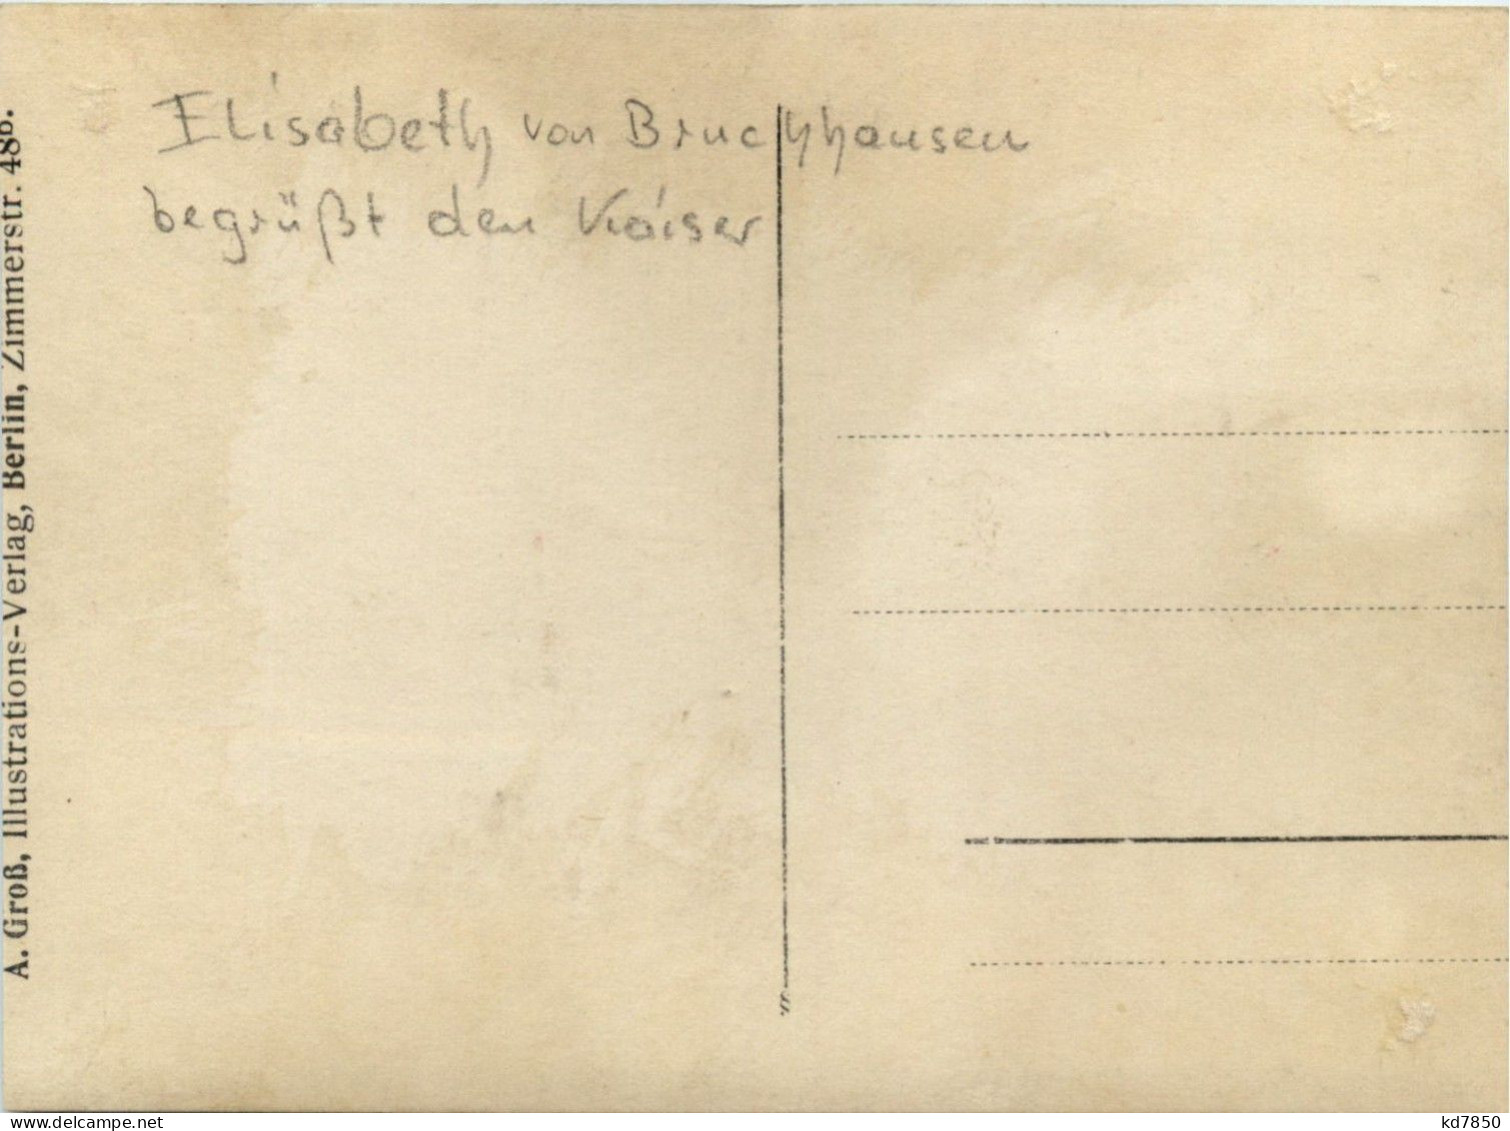 Elisabeth Von Bruchhausen Begrüsst Den Kaiser - Case Reali